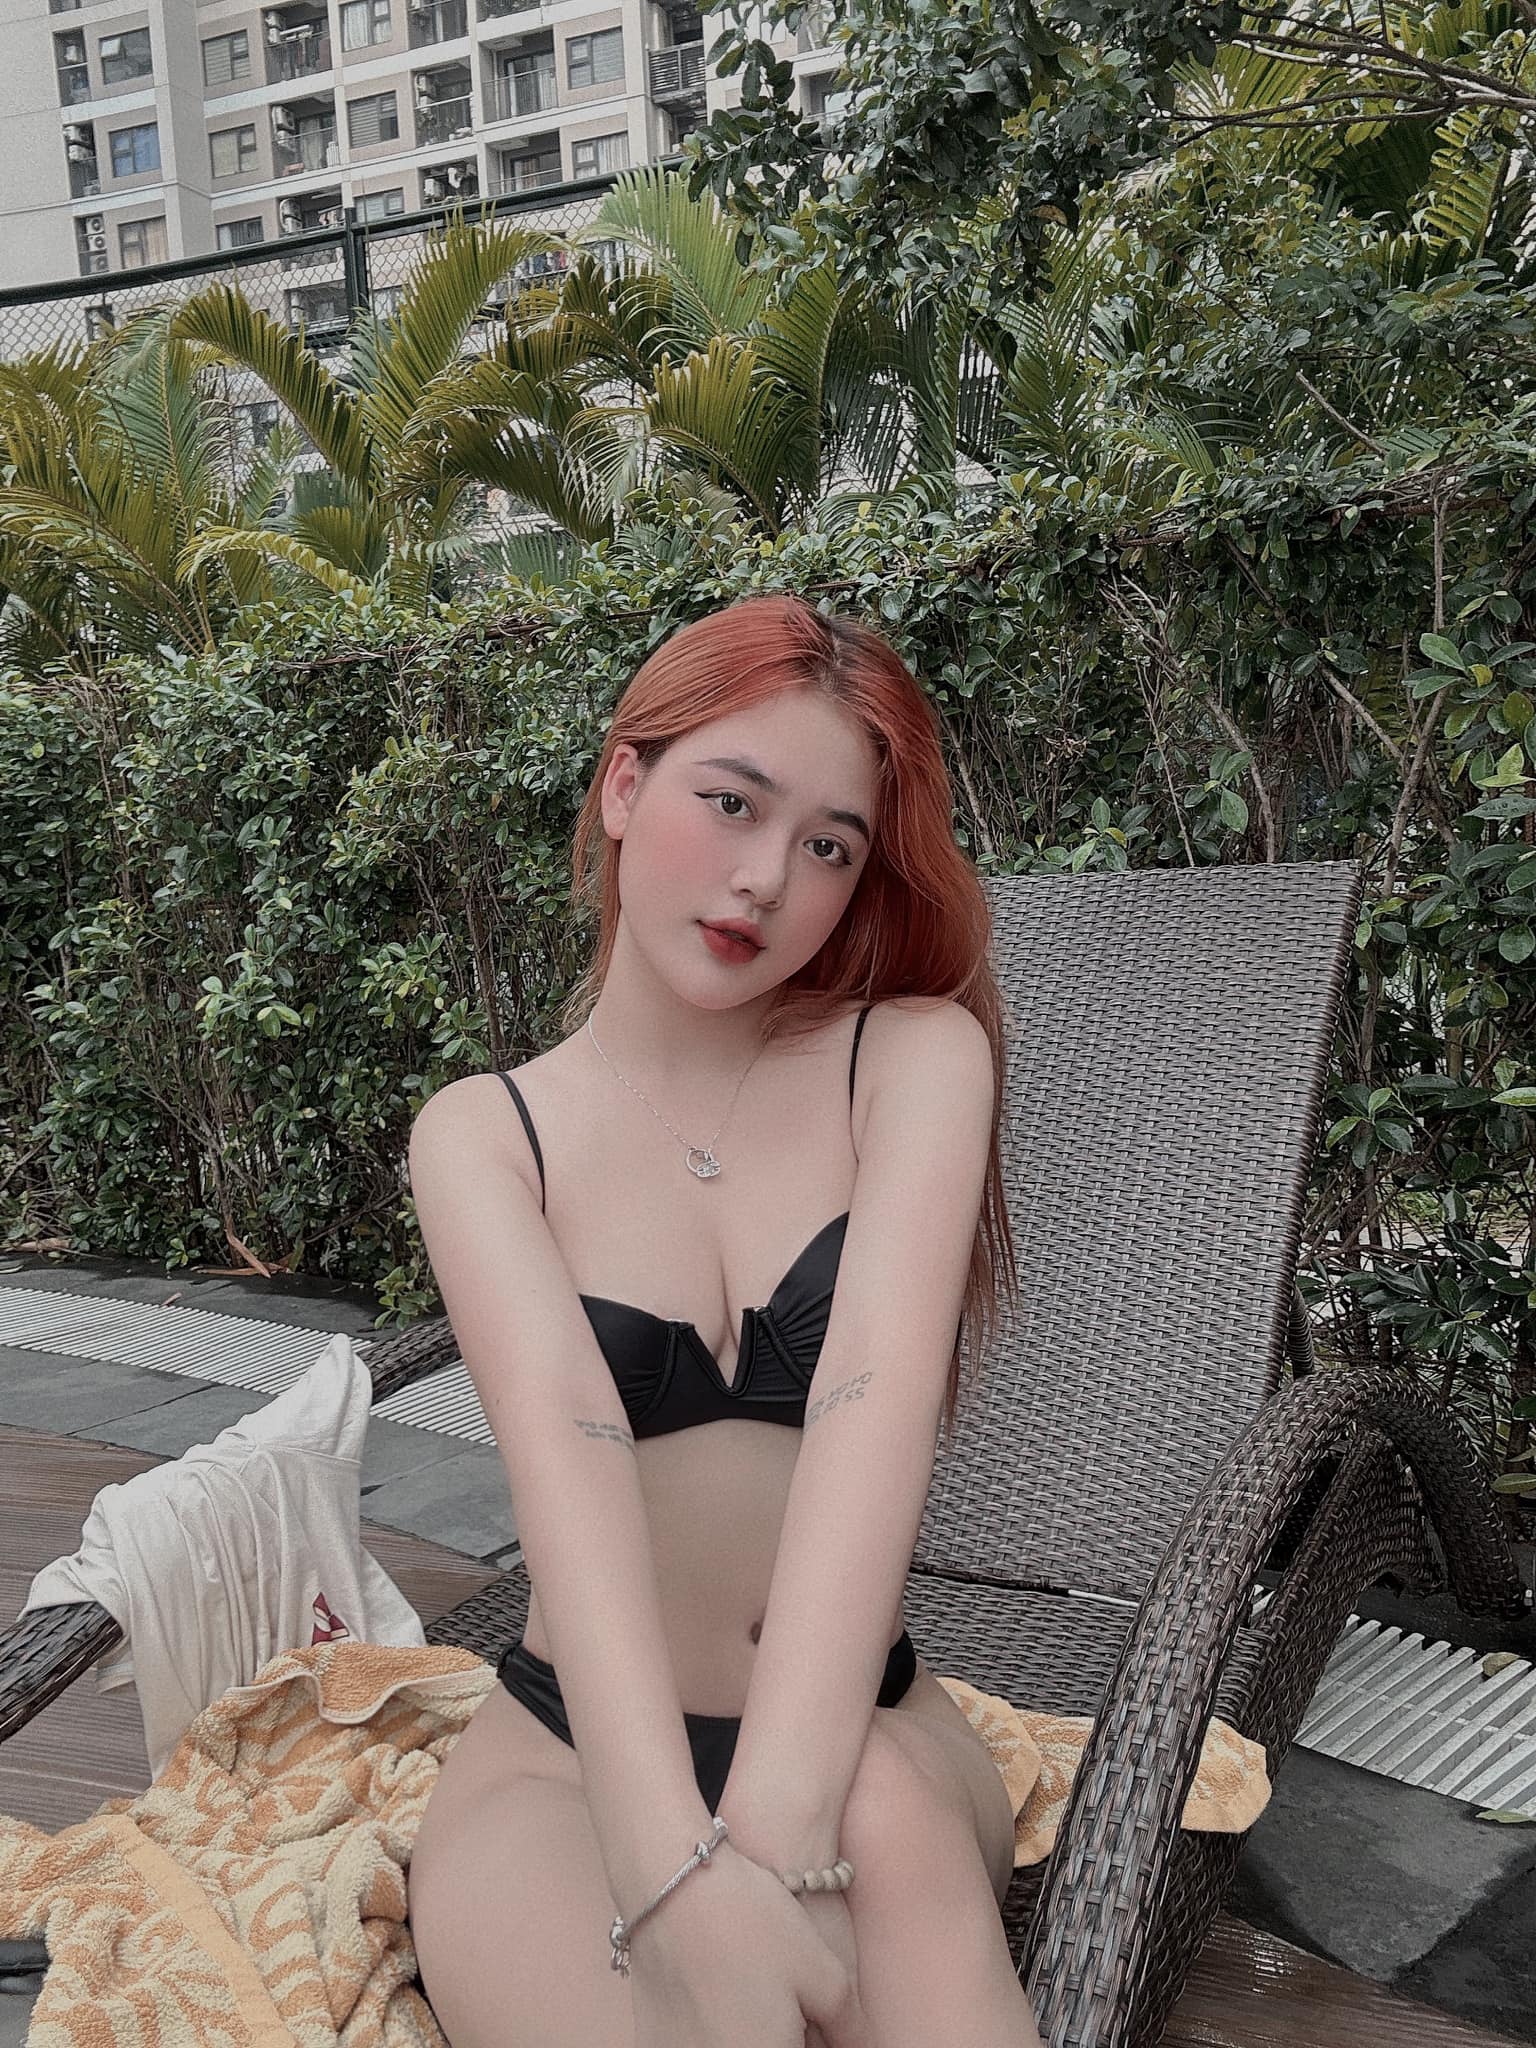 Diễm Quỳnh nhận được nhiều lời khen ngợi của dân mạng trong loạt ảnh diện bikini mới. Cô cũng khéo léo tạo dáng để tránh phản cảm.